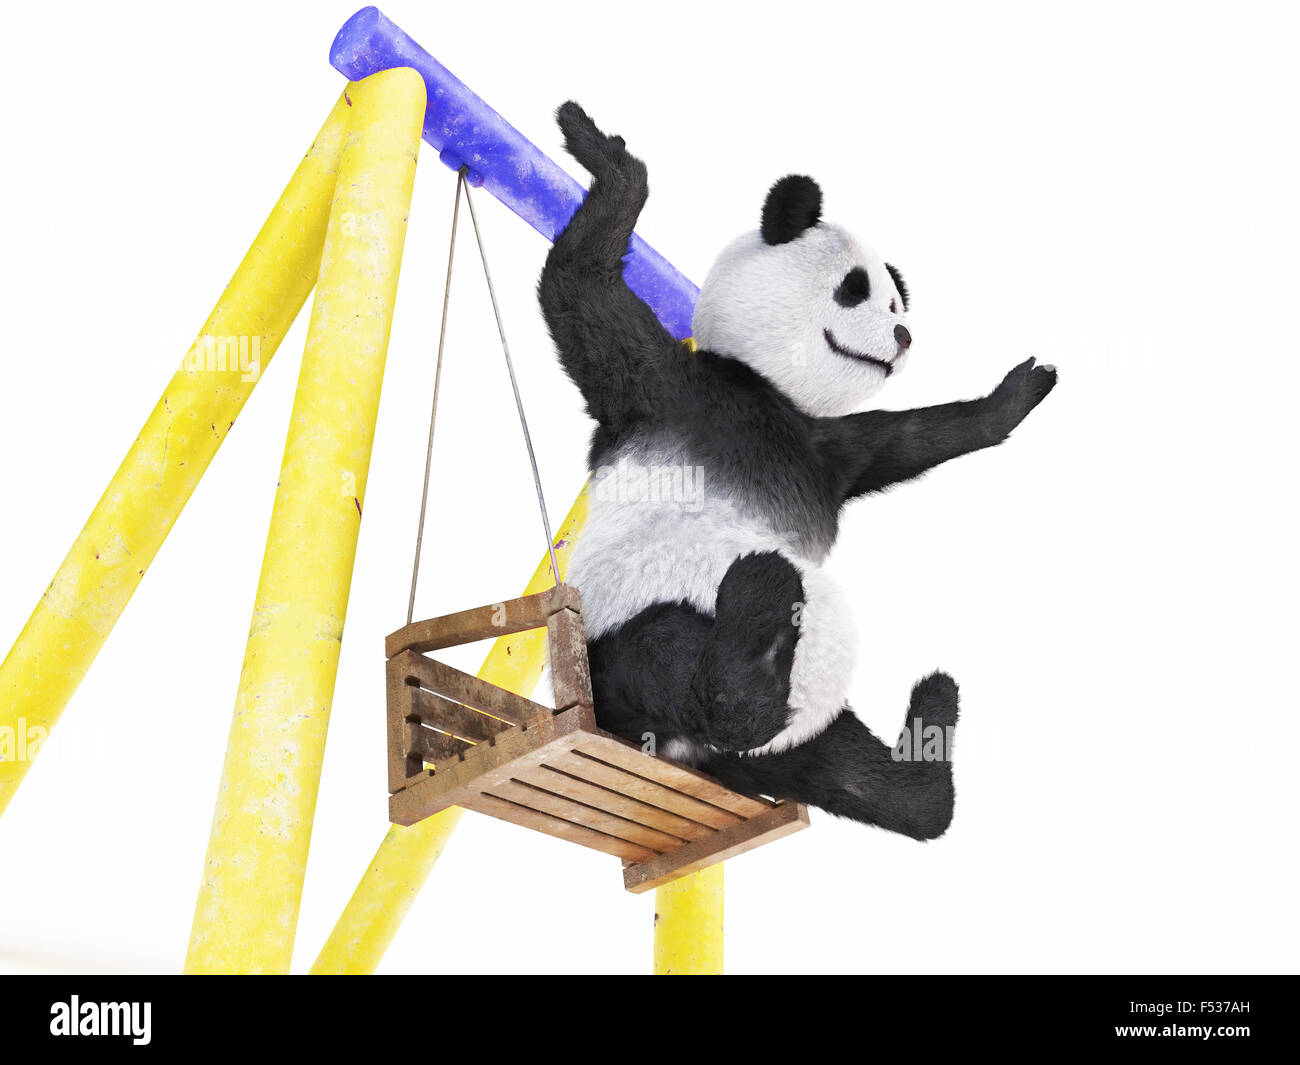 Pfoten breit, Seiten fröhlichen Charakter Panda sitzend auf Schaukel (Wippe  gelb-blau). wackeln Sie und machen Sie sich bereit zu springen aus Holz  Stockfotografie - Alamy